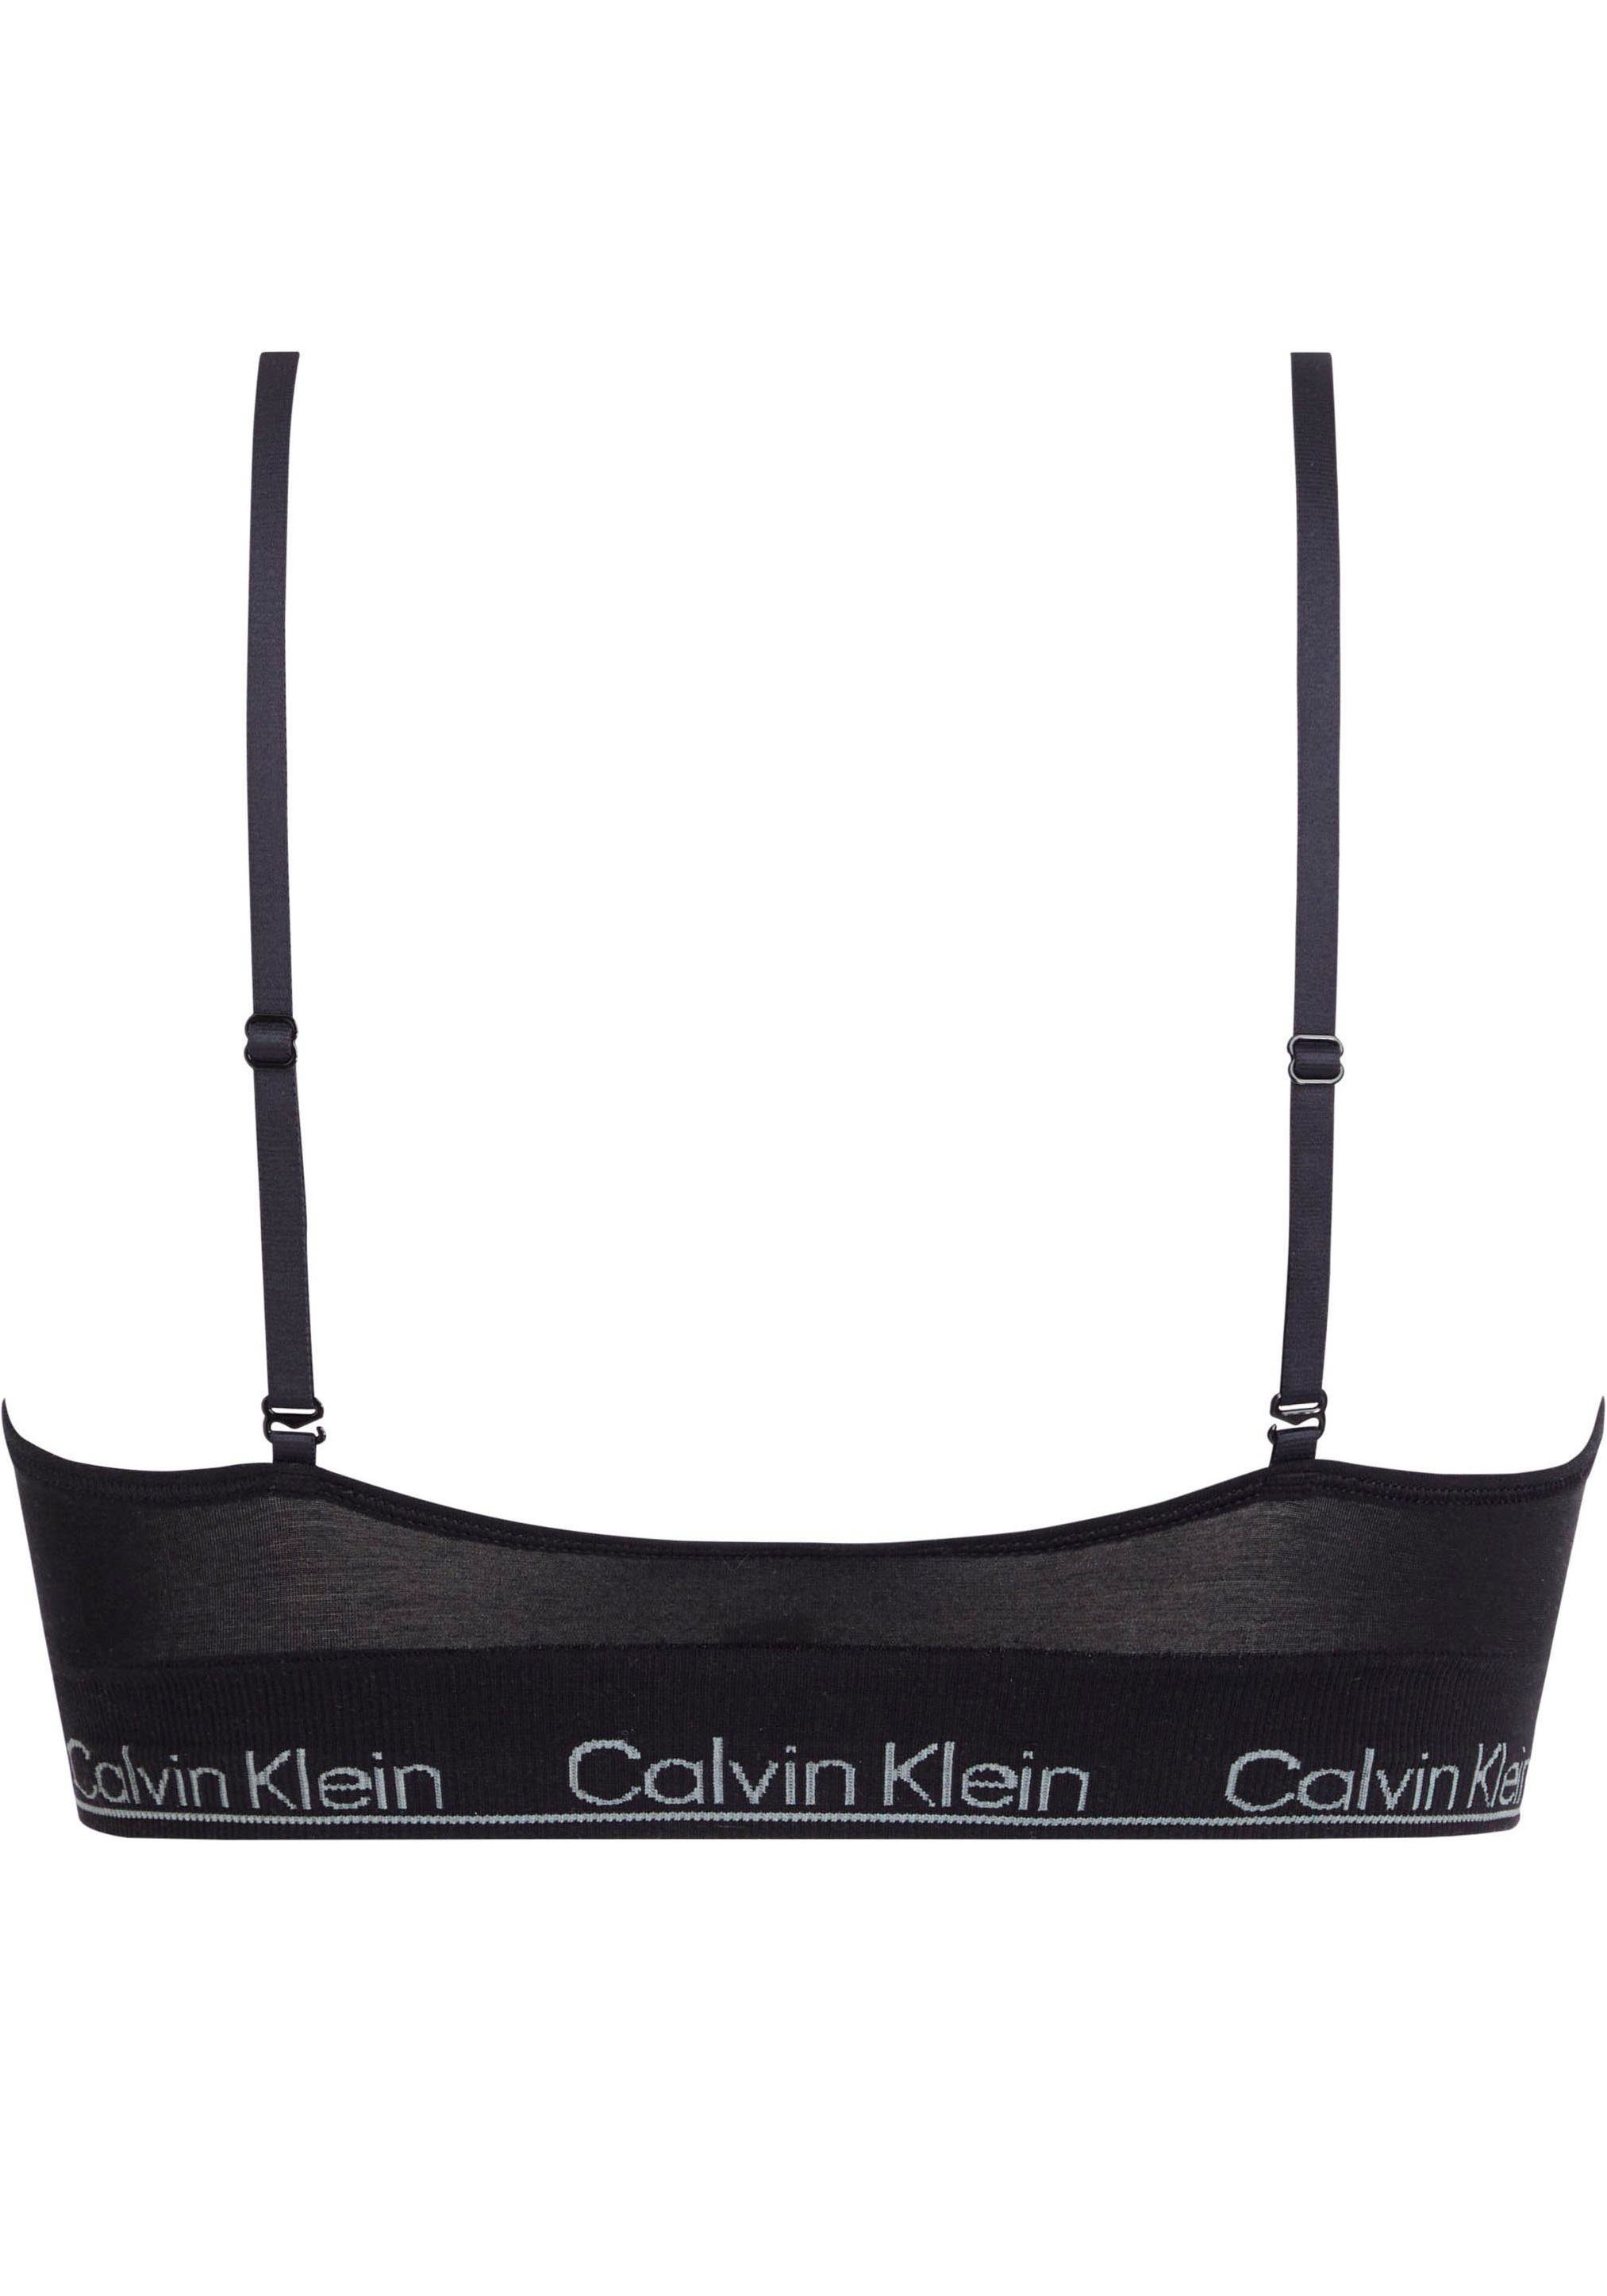 Calvin Klein Underwear Triangel BH CK-Logoschriftzug, Klein von Calvin Underwear TRIANGLE LGHT LINED mit Triangel-BH